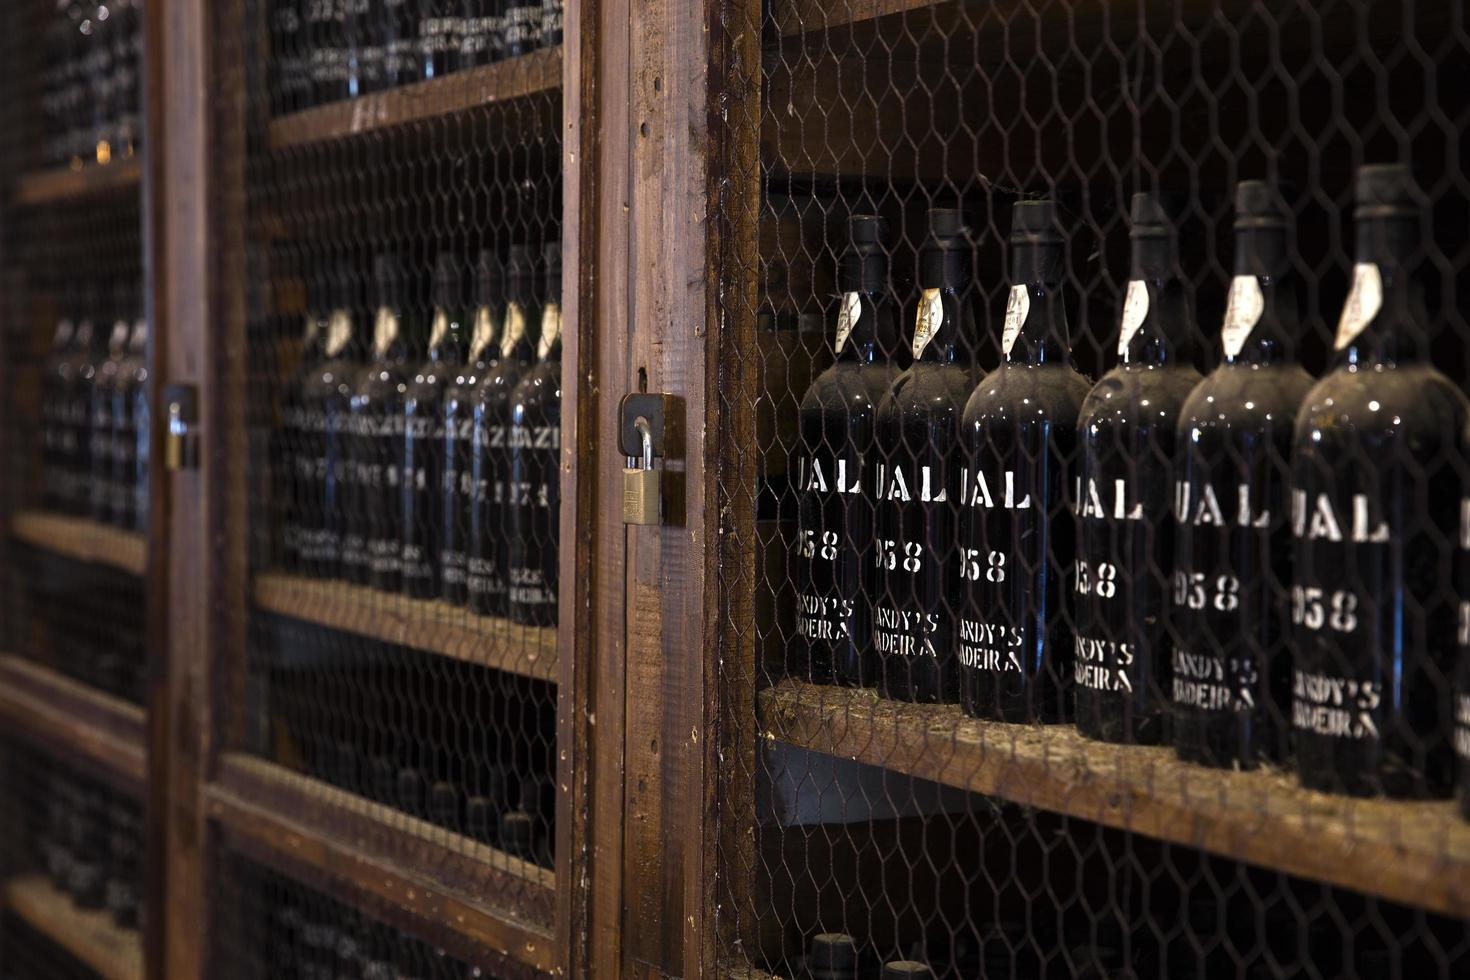 Madeira, Portogallo, 2020 - dettaglio della conservazione del vino di blandy del vino vintage di Madeira in Portogallo. è un'azienda vinicola a conduzione familiare fondata da john blandy nel 1811. foto